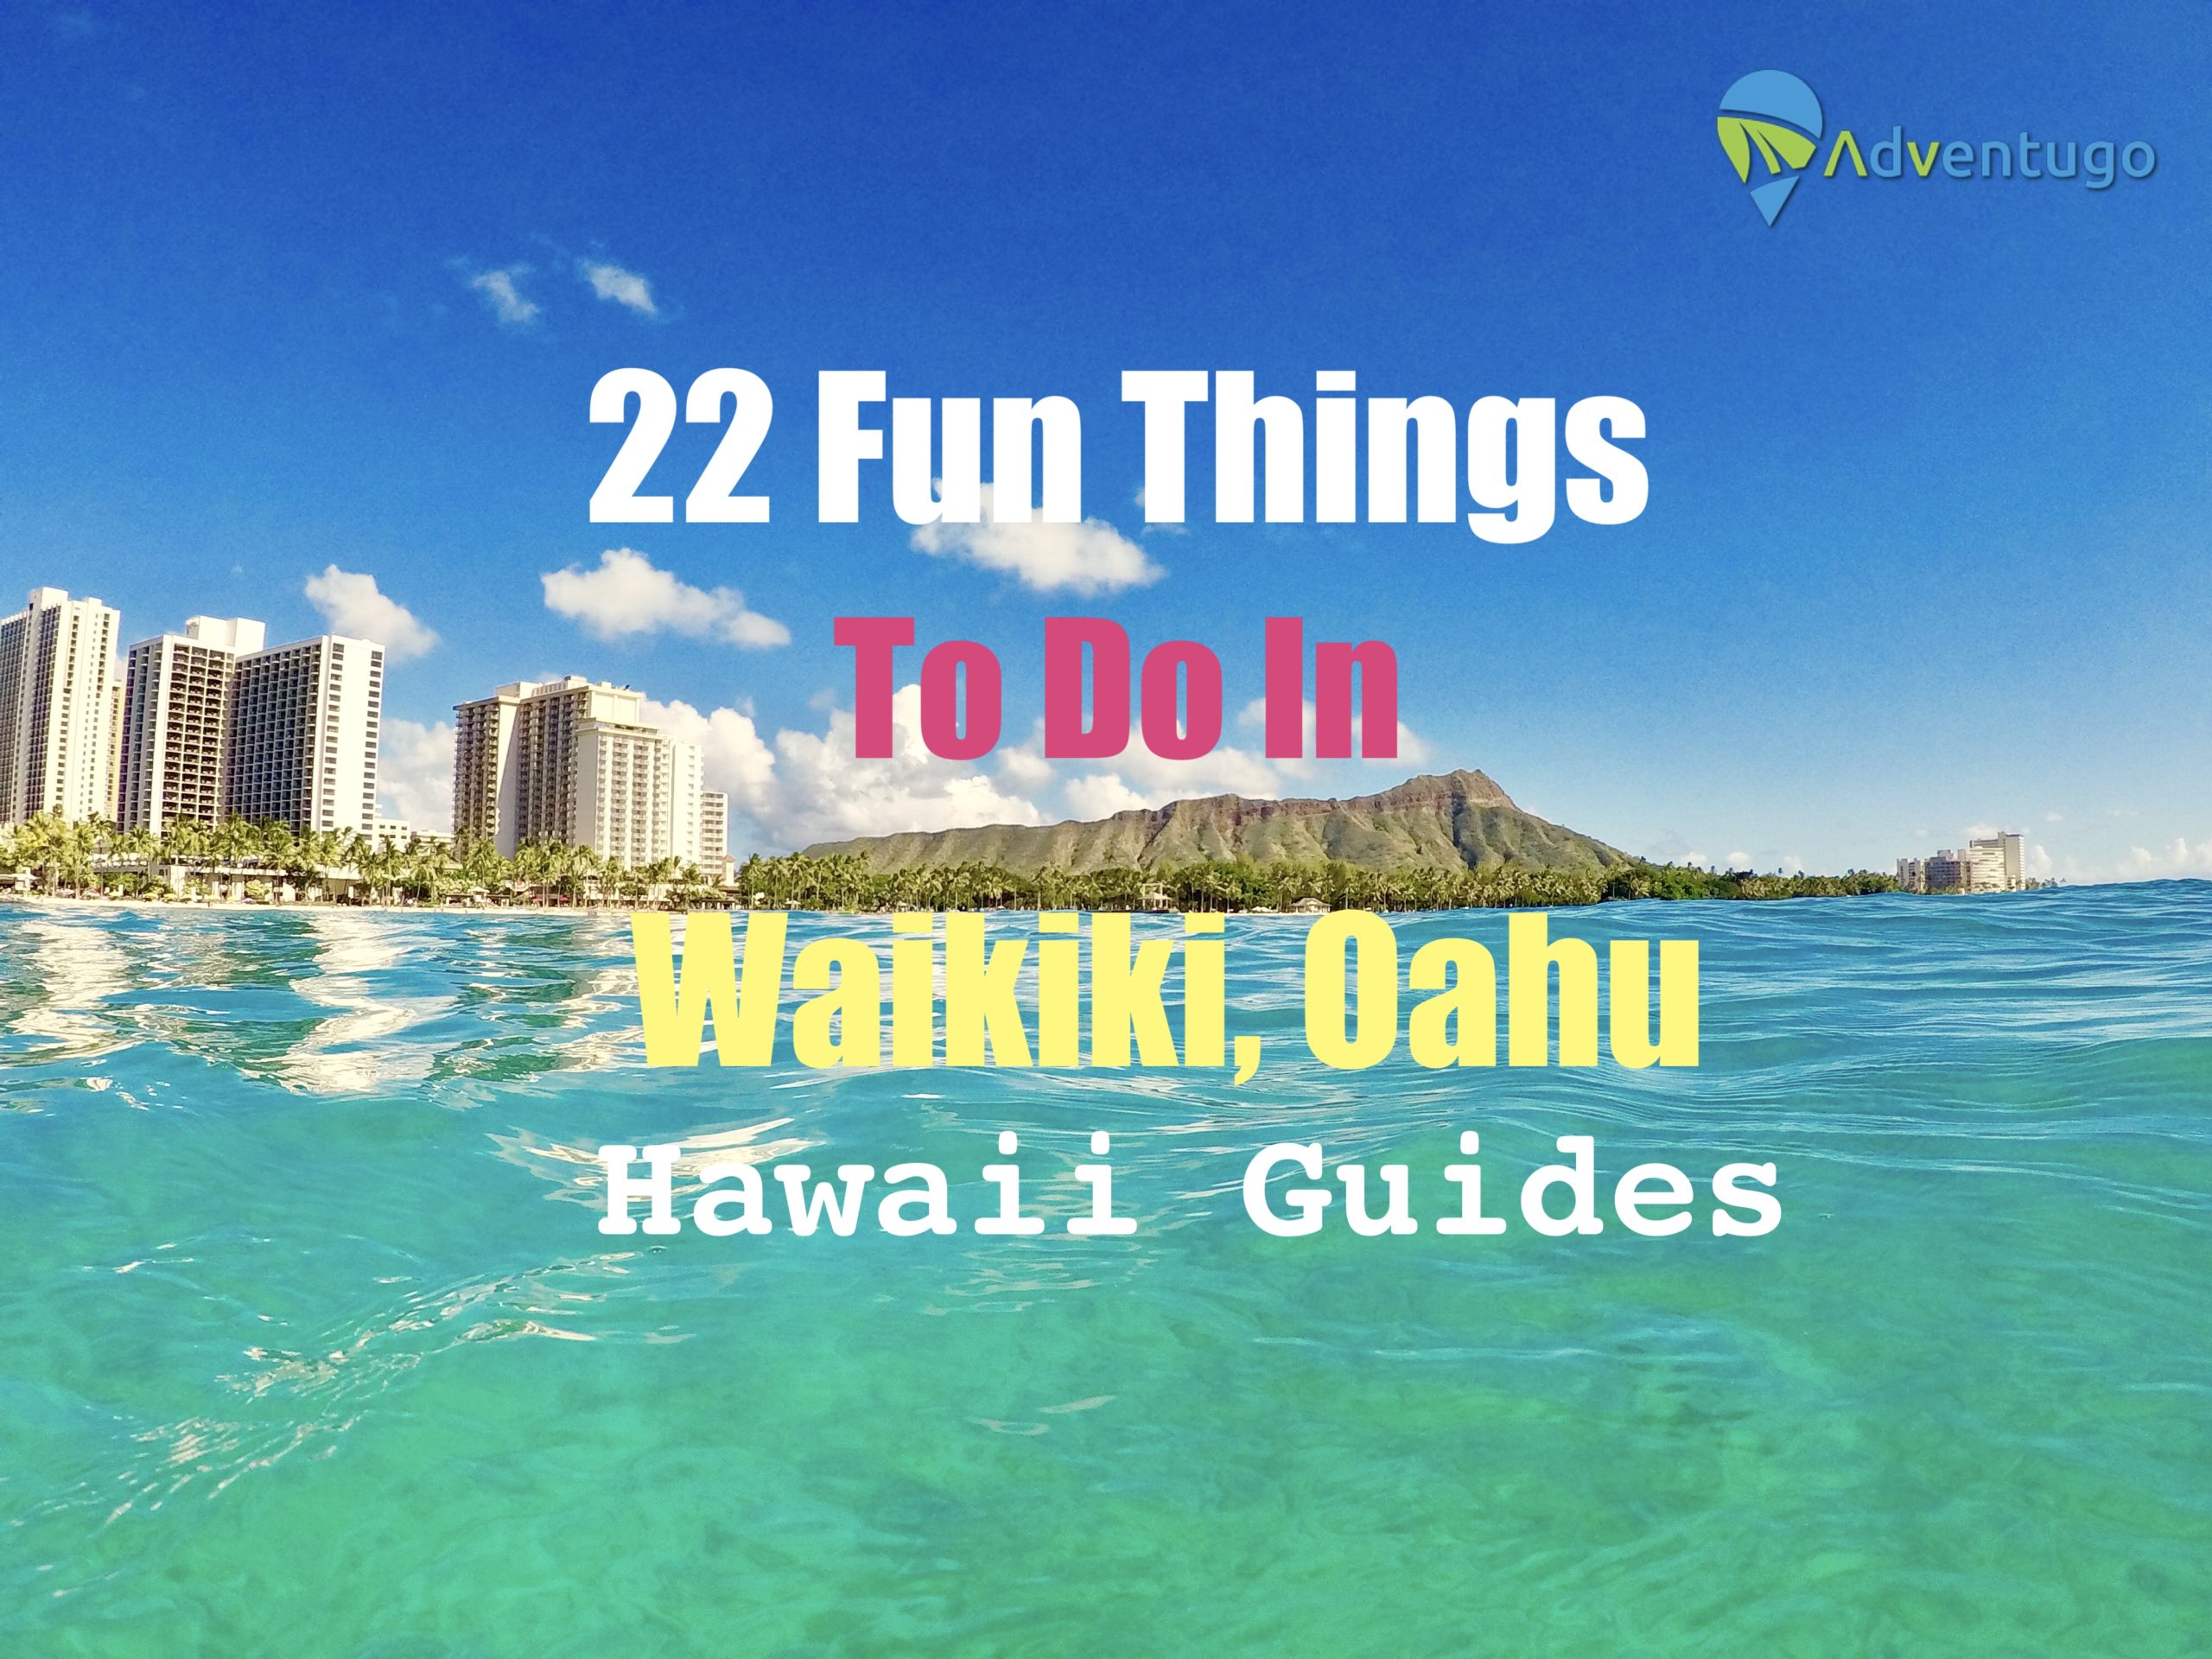 22 Fun Things to do in Waikiki, Oahu. Hawaii Guides